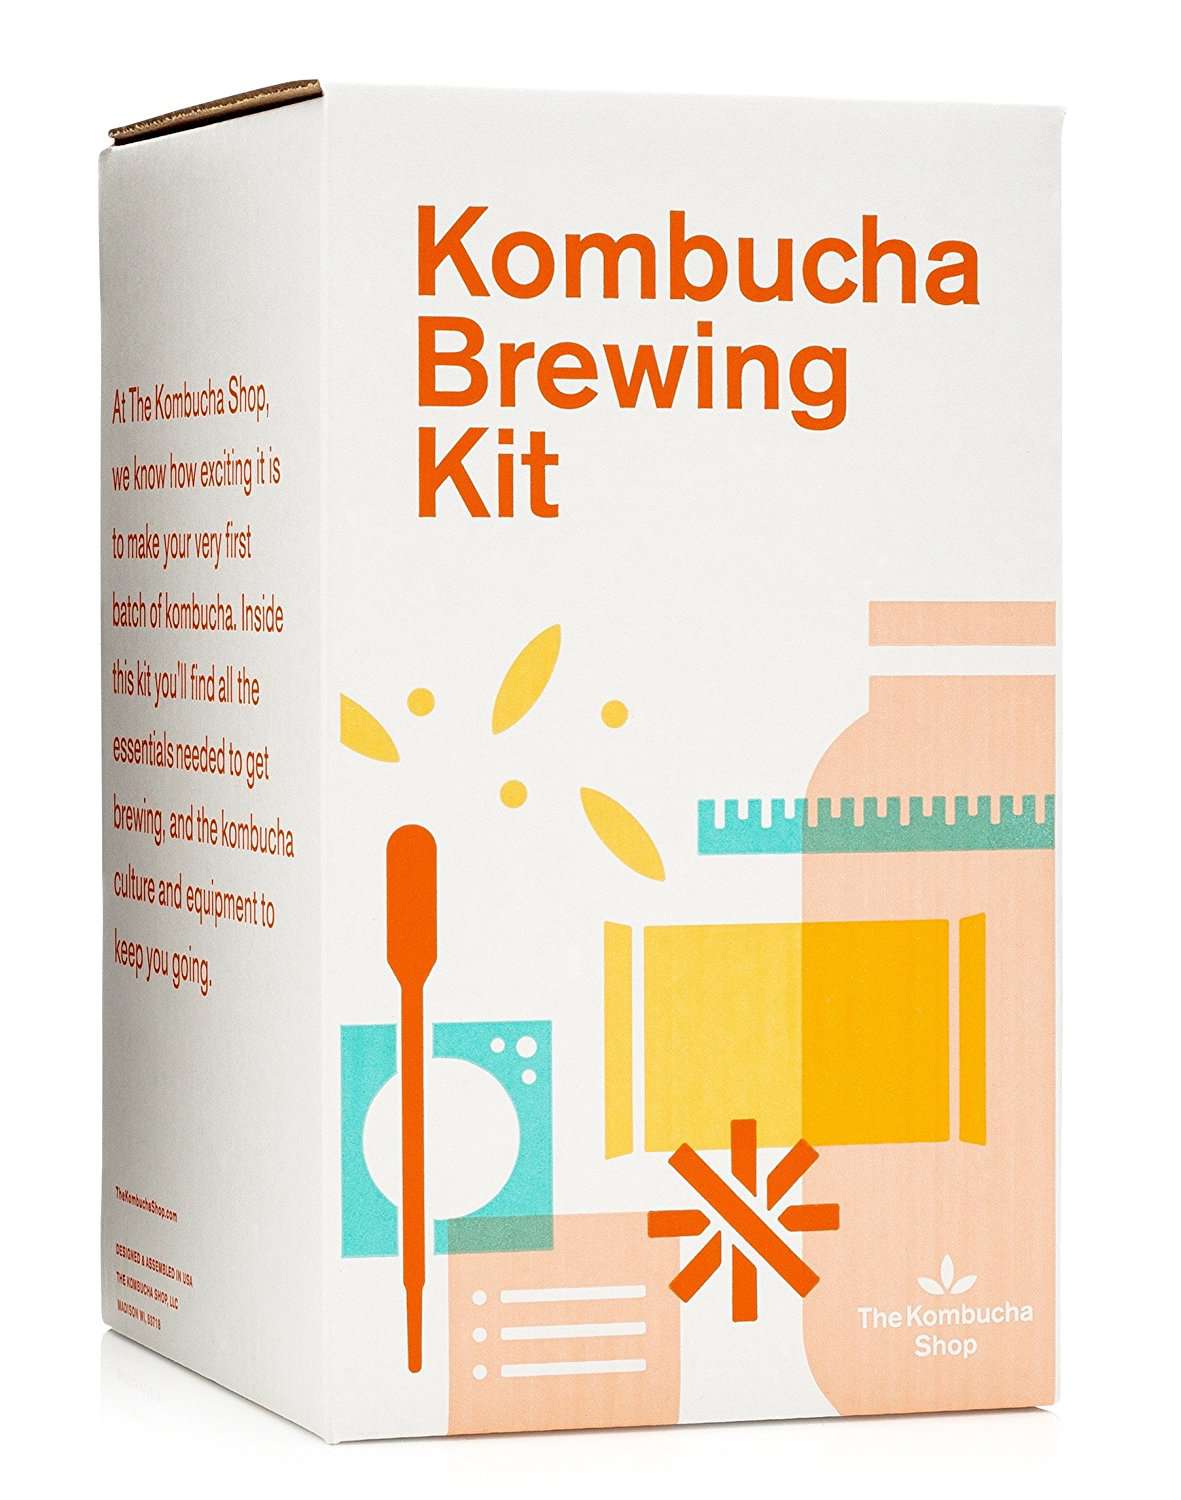 De Kombucha Shop Kombucha Brewing Kit met Biologische Kombucha Scoby. Inclusief glazen brouwpot, biologische kombucha losse bladthee, temperatuurmeter, biologische suiker en meer!